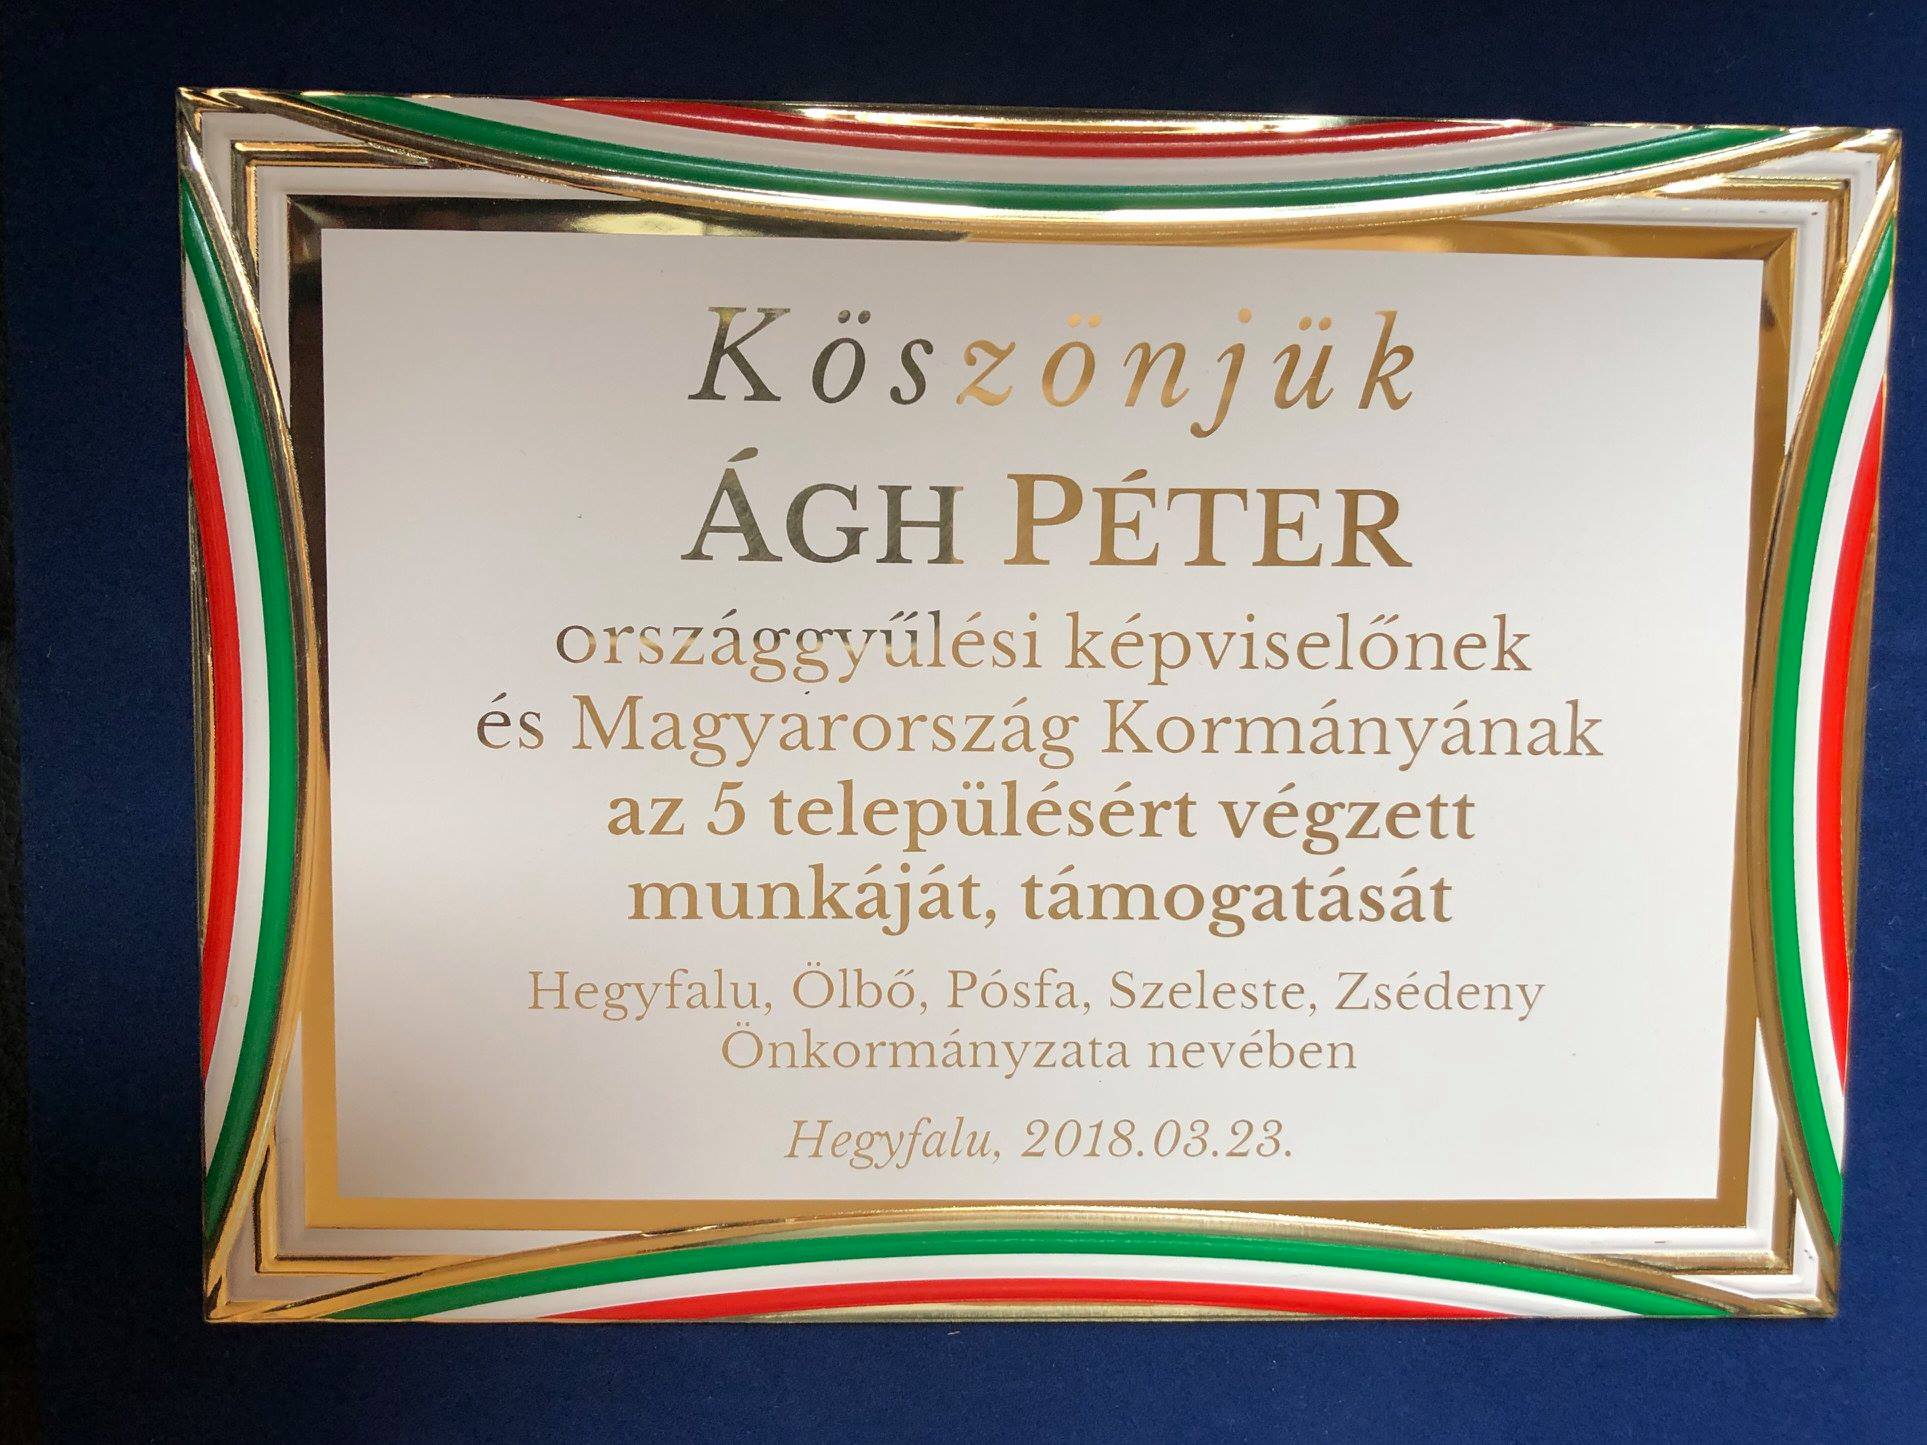 Aranyozott emlékplakettel köszönték meg a fideszes politikusnak a beruházást, amit természetesen az EU-finanszíroz